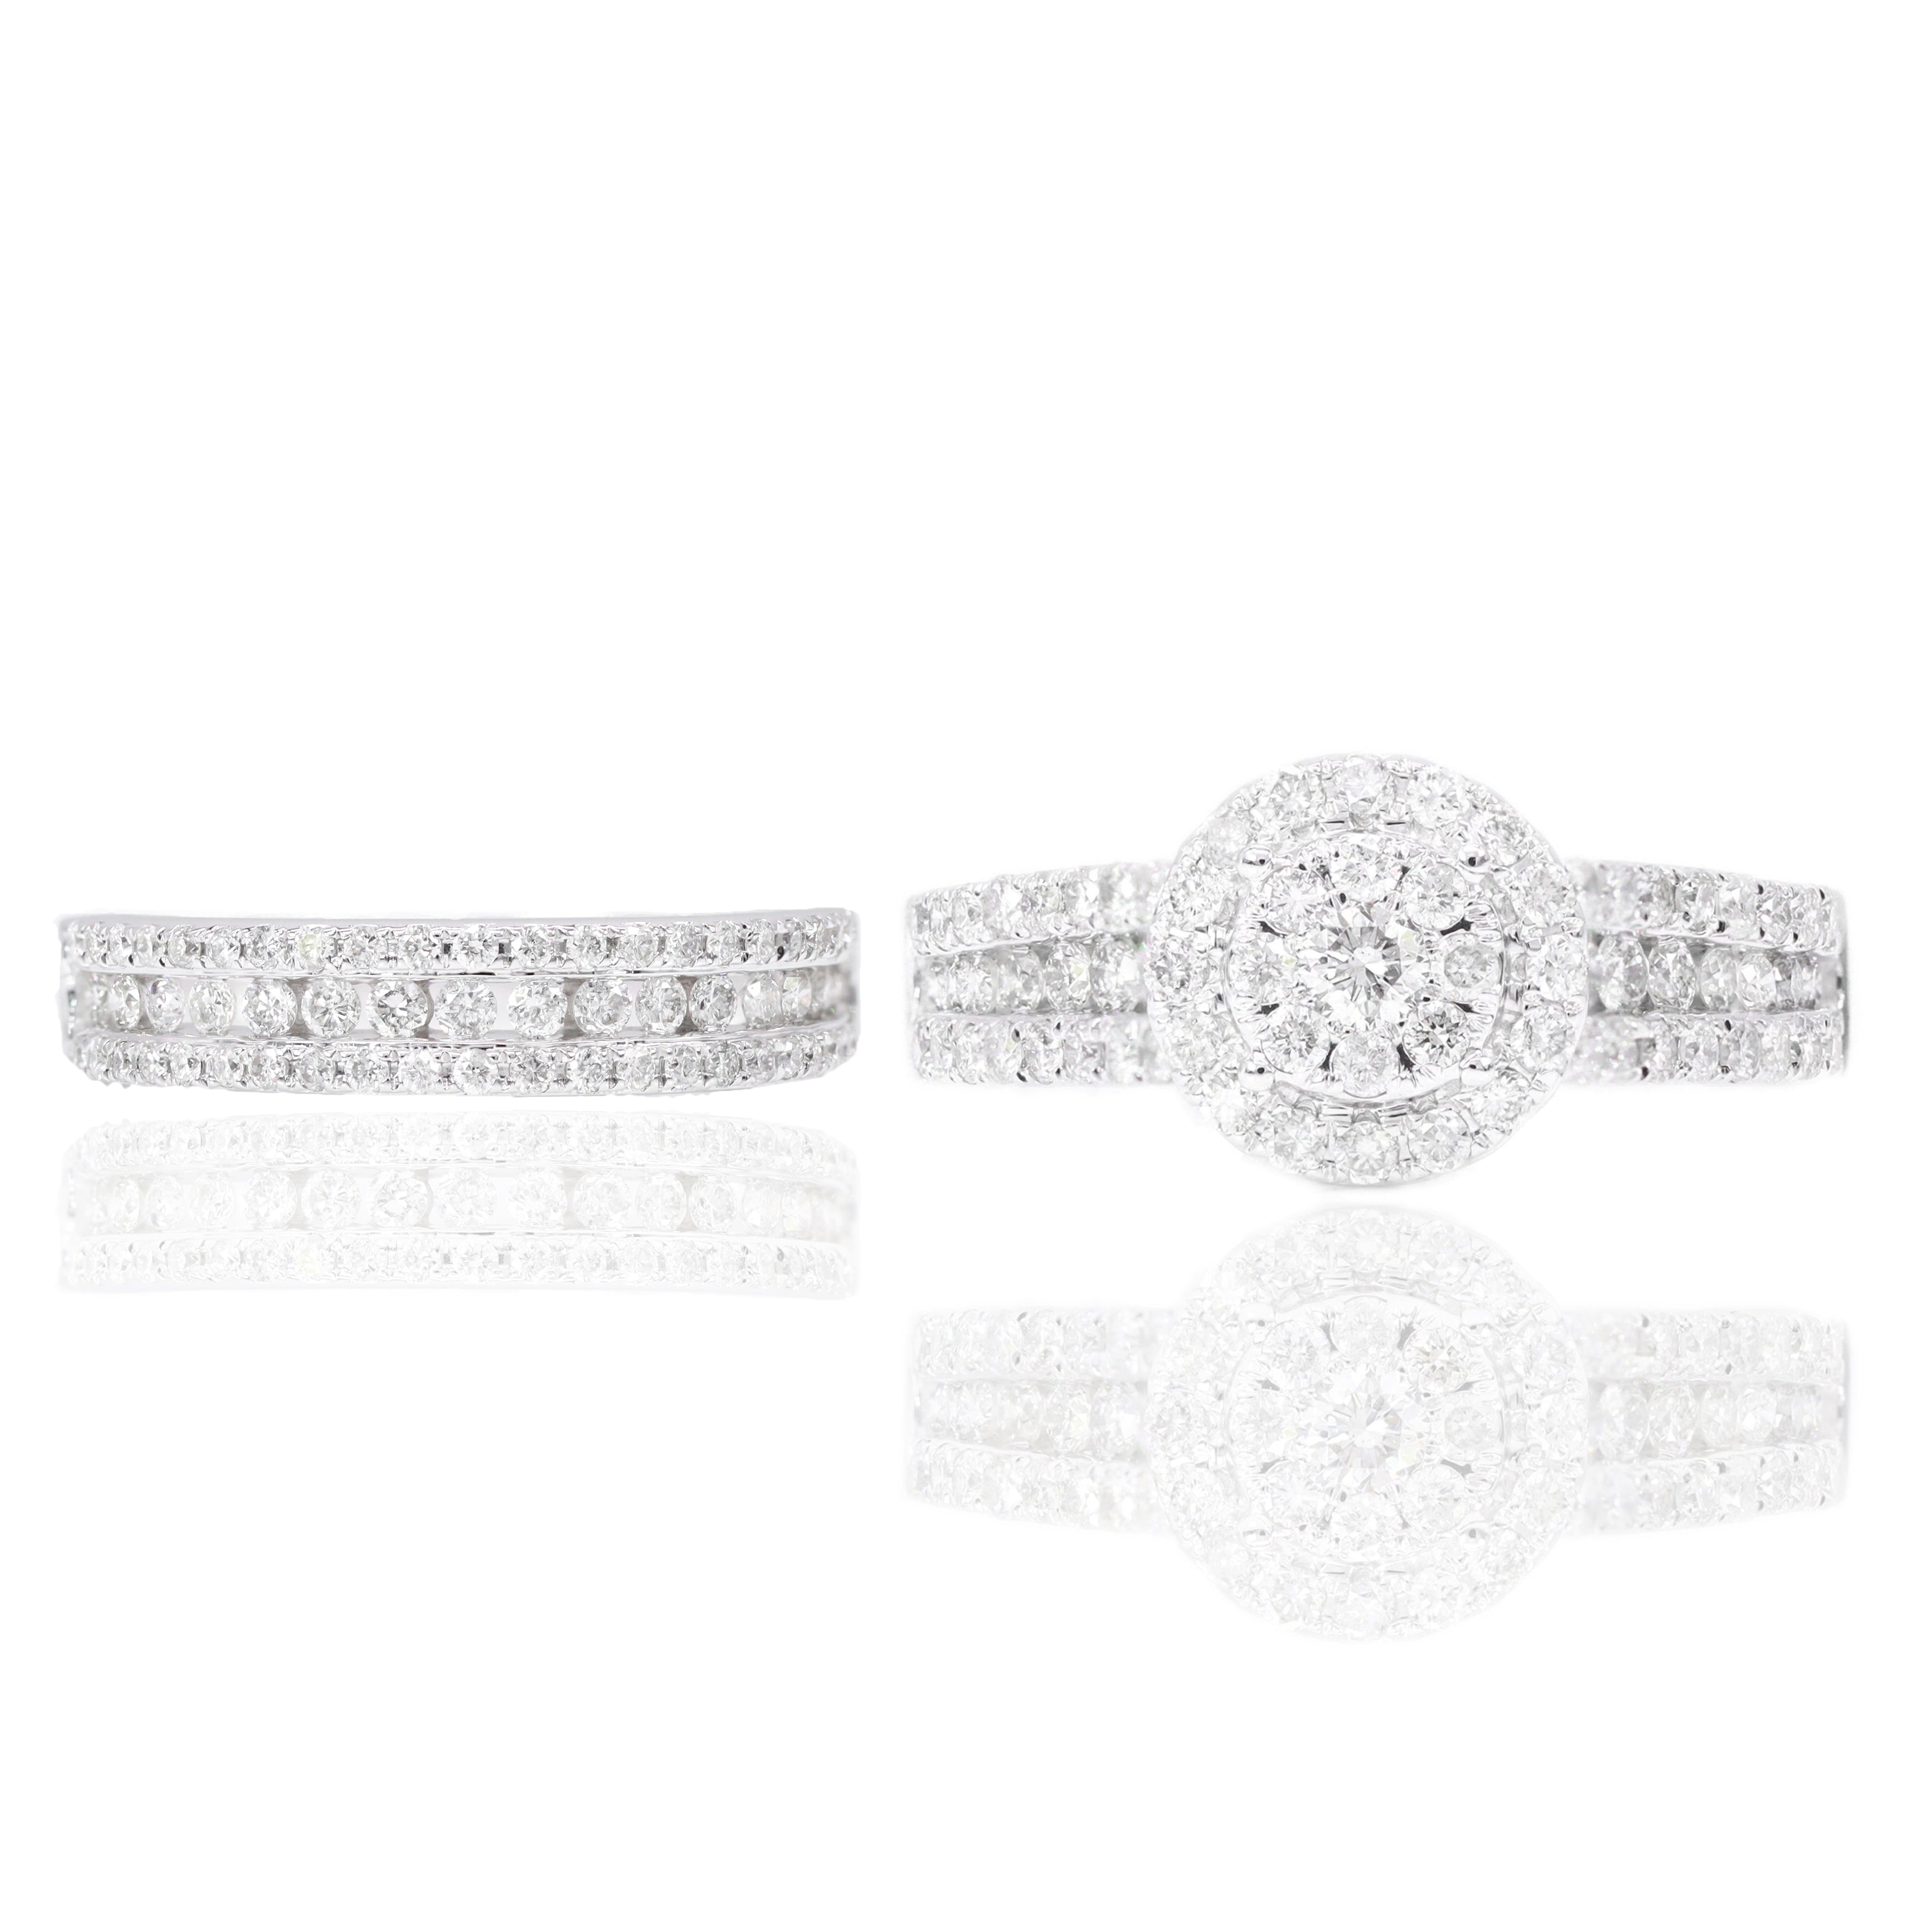 Double Halo Diamond Engagement Ring & Band